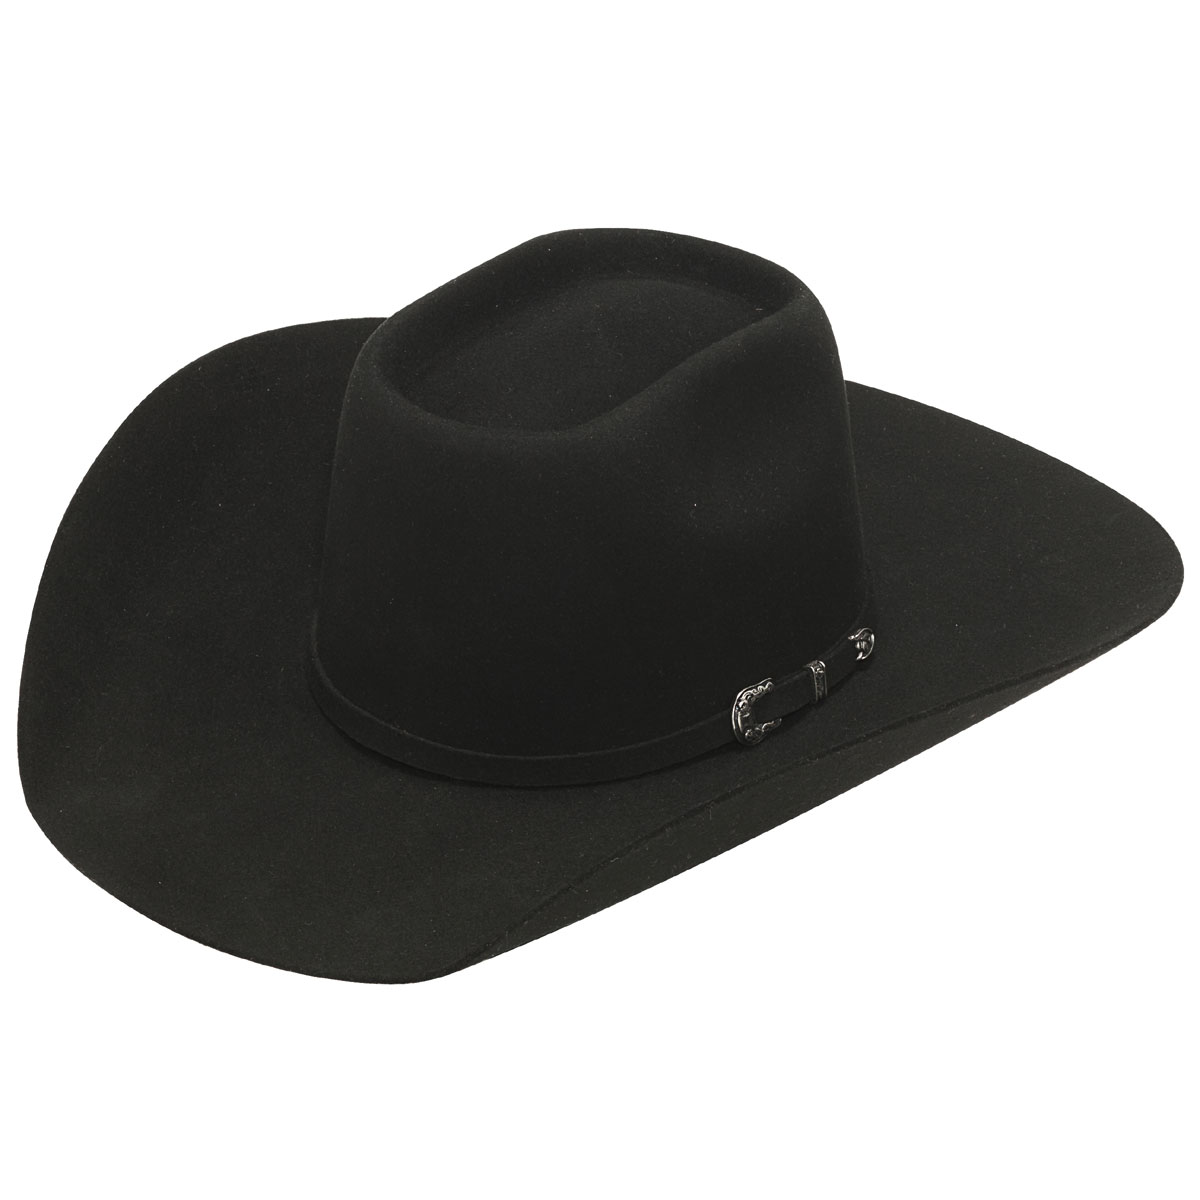 Twister 5X Australian Wool Blend Western Hat - Black